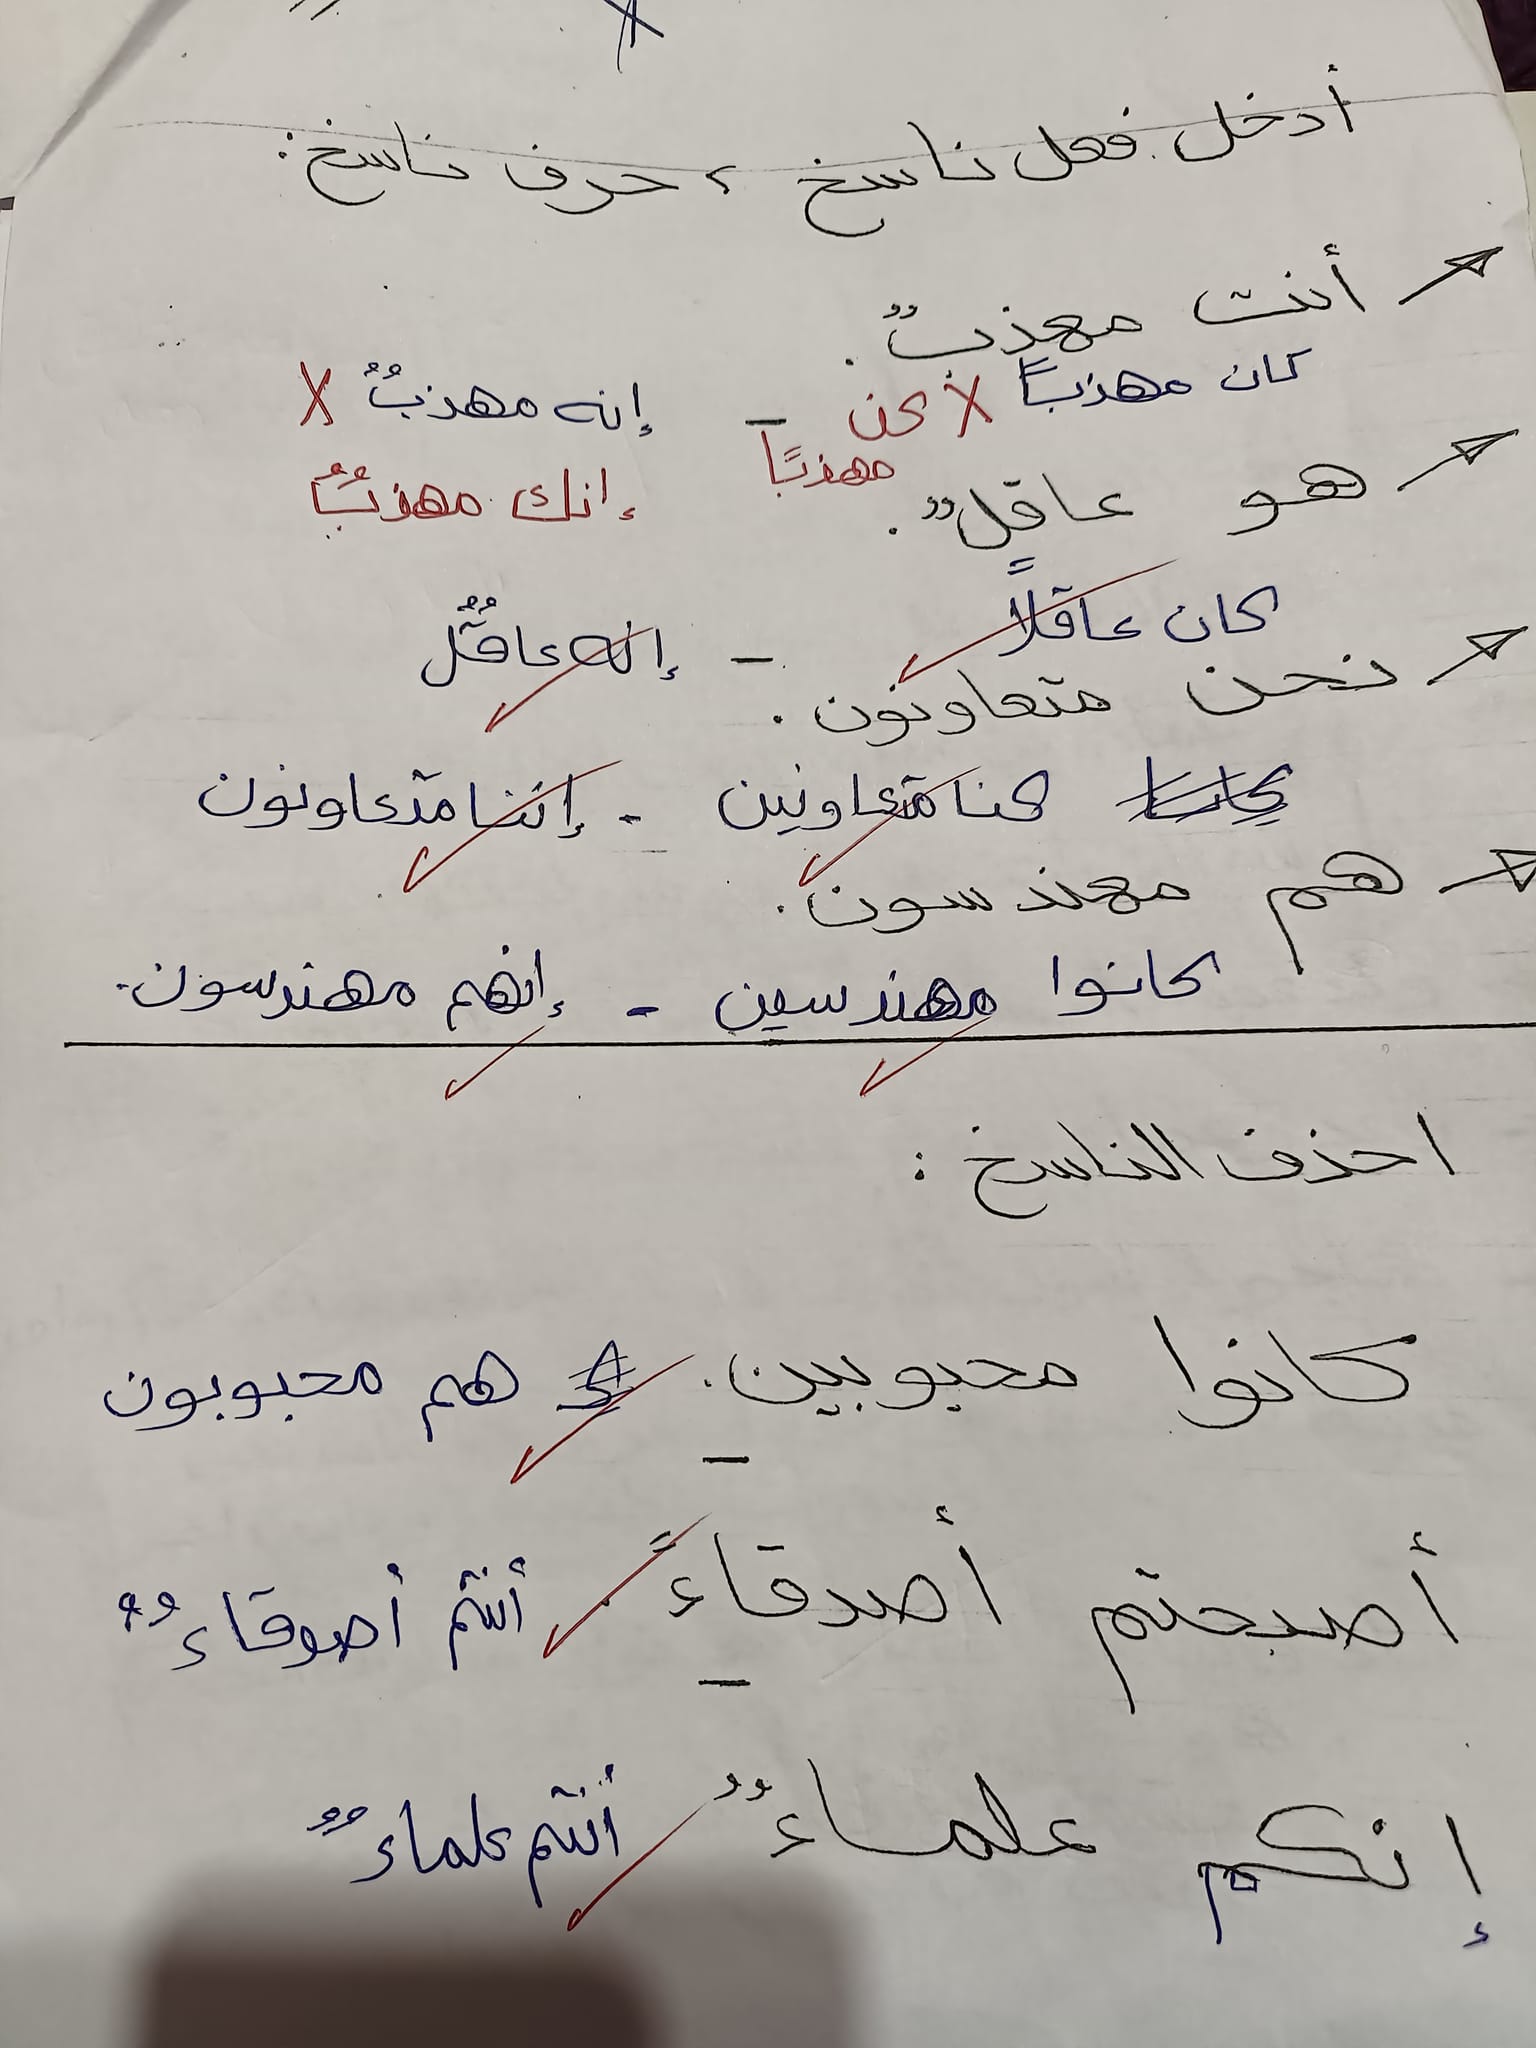 مدرس دوت كوم مراجعة نحو بالاجابات فى اللغة العربية للصف الأول الإعدادي الترم الأول أ/ مها سعيد	